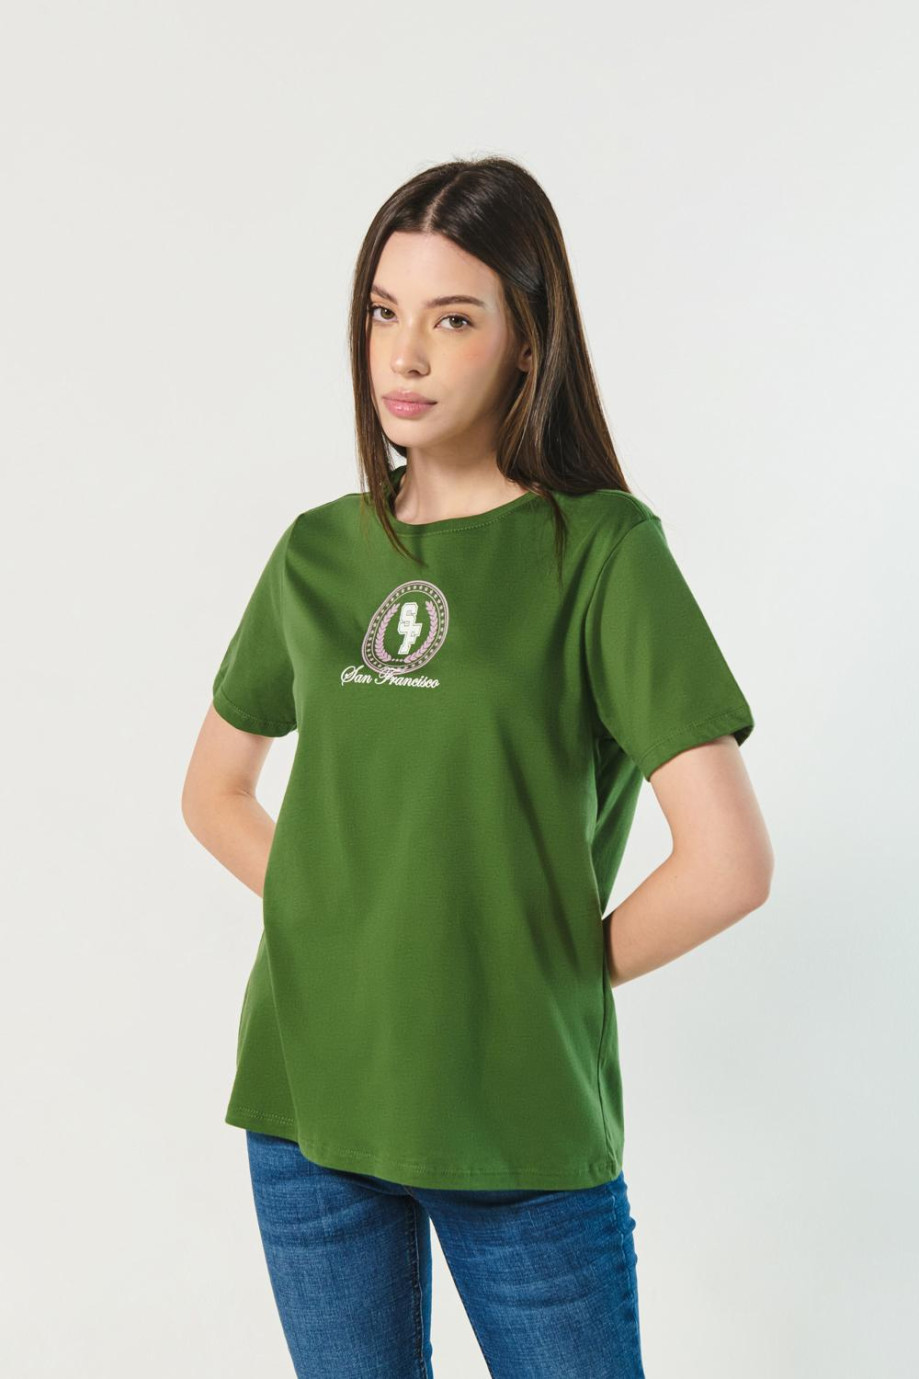 Camiseta para mujer manga corta unilcolor con estampado en frente estilo College.